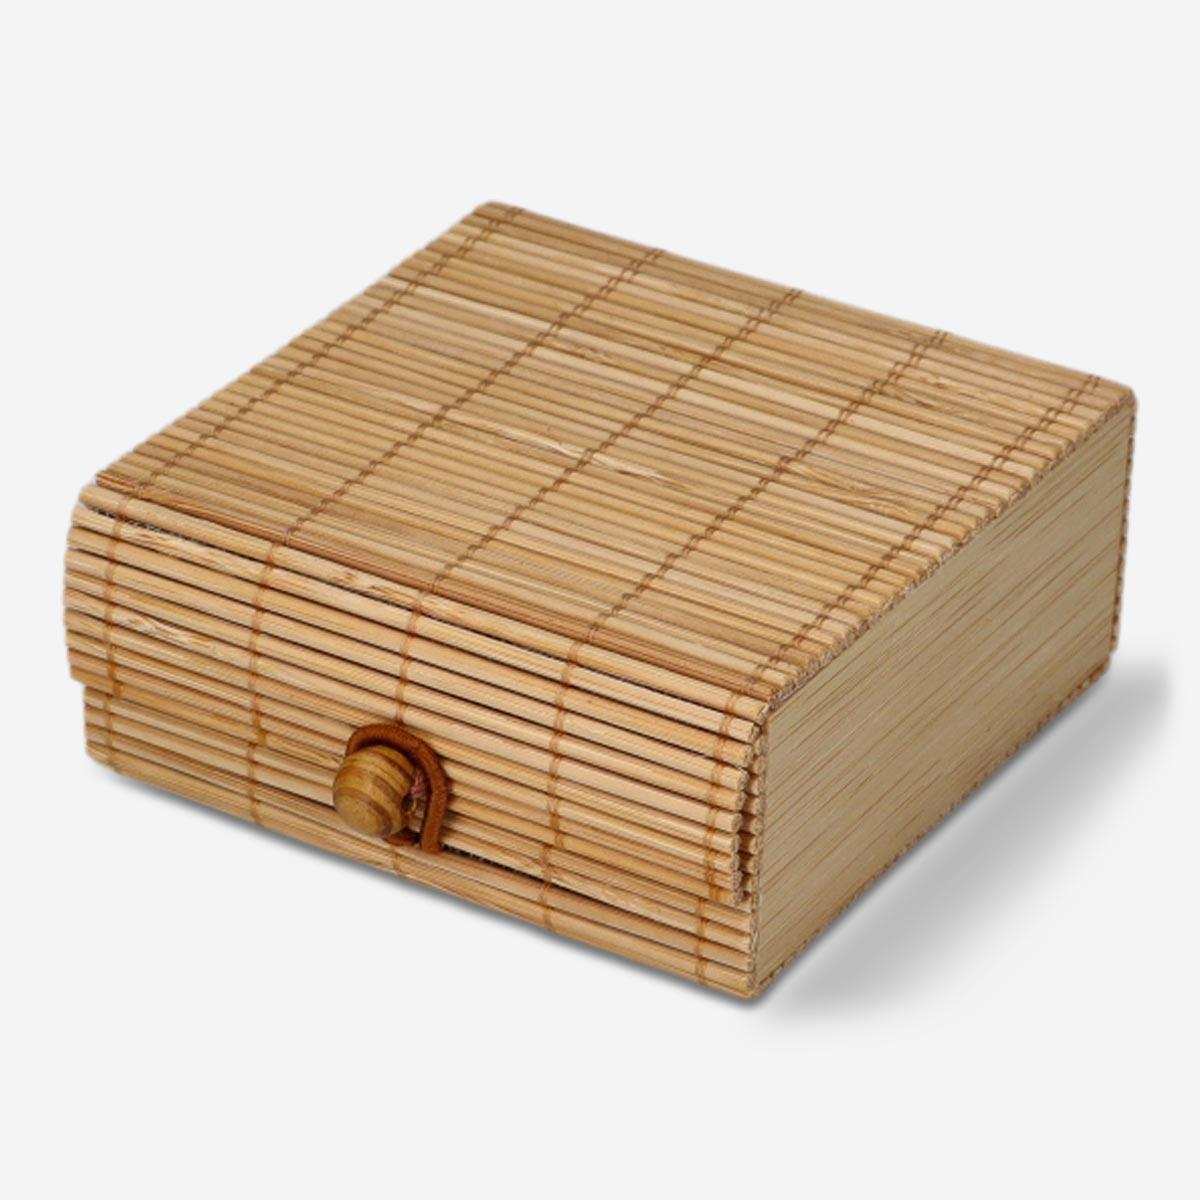 Wooden storage box. 9 cm